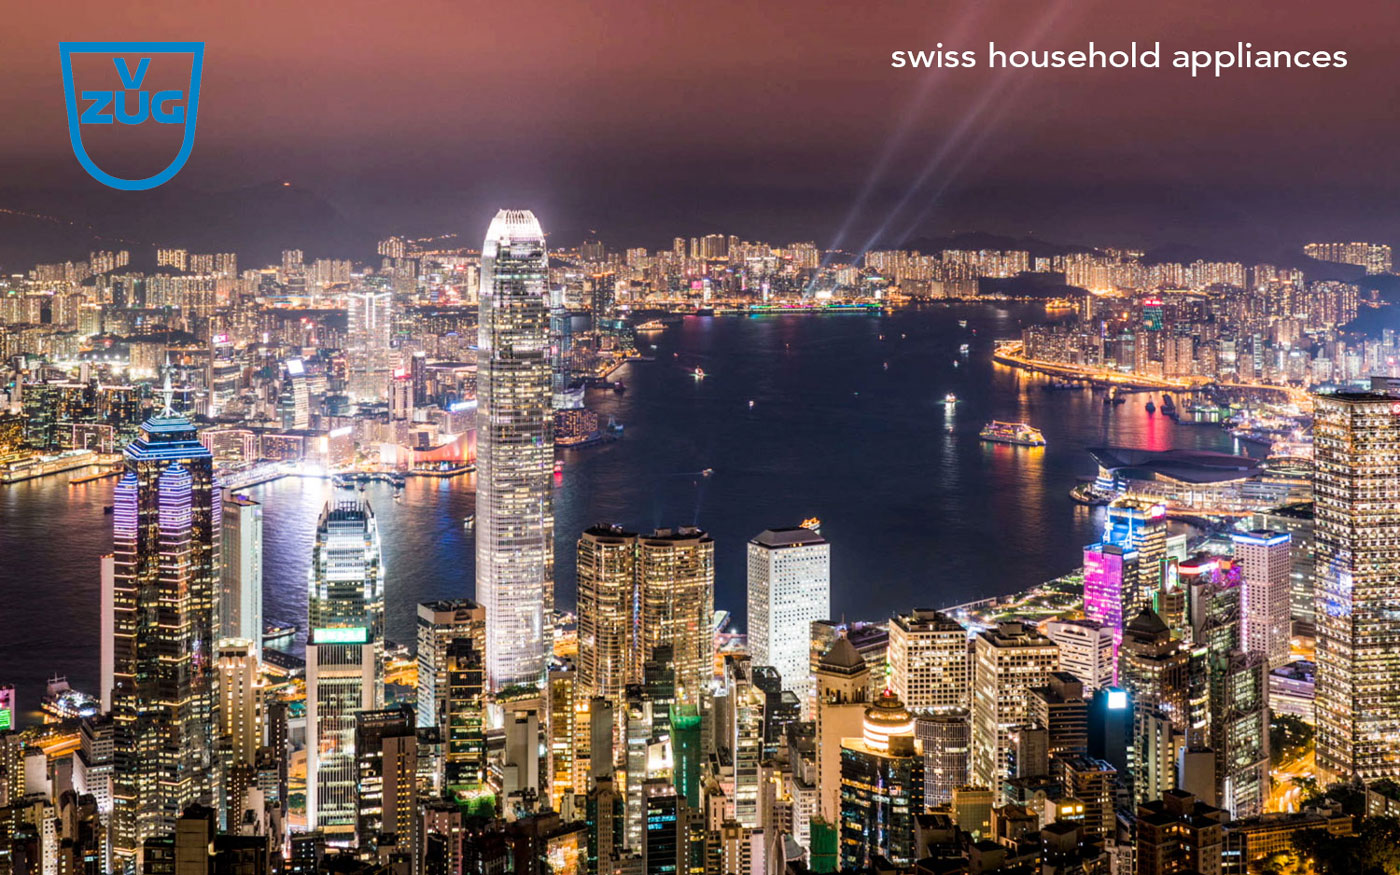 Skyline of Hongkong at night v-zug